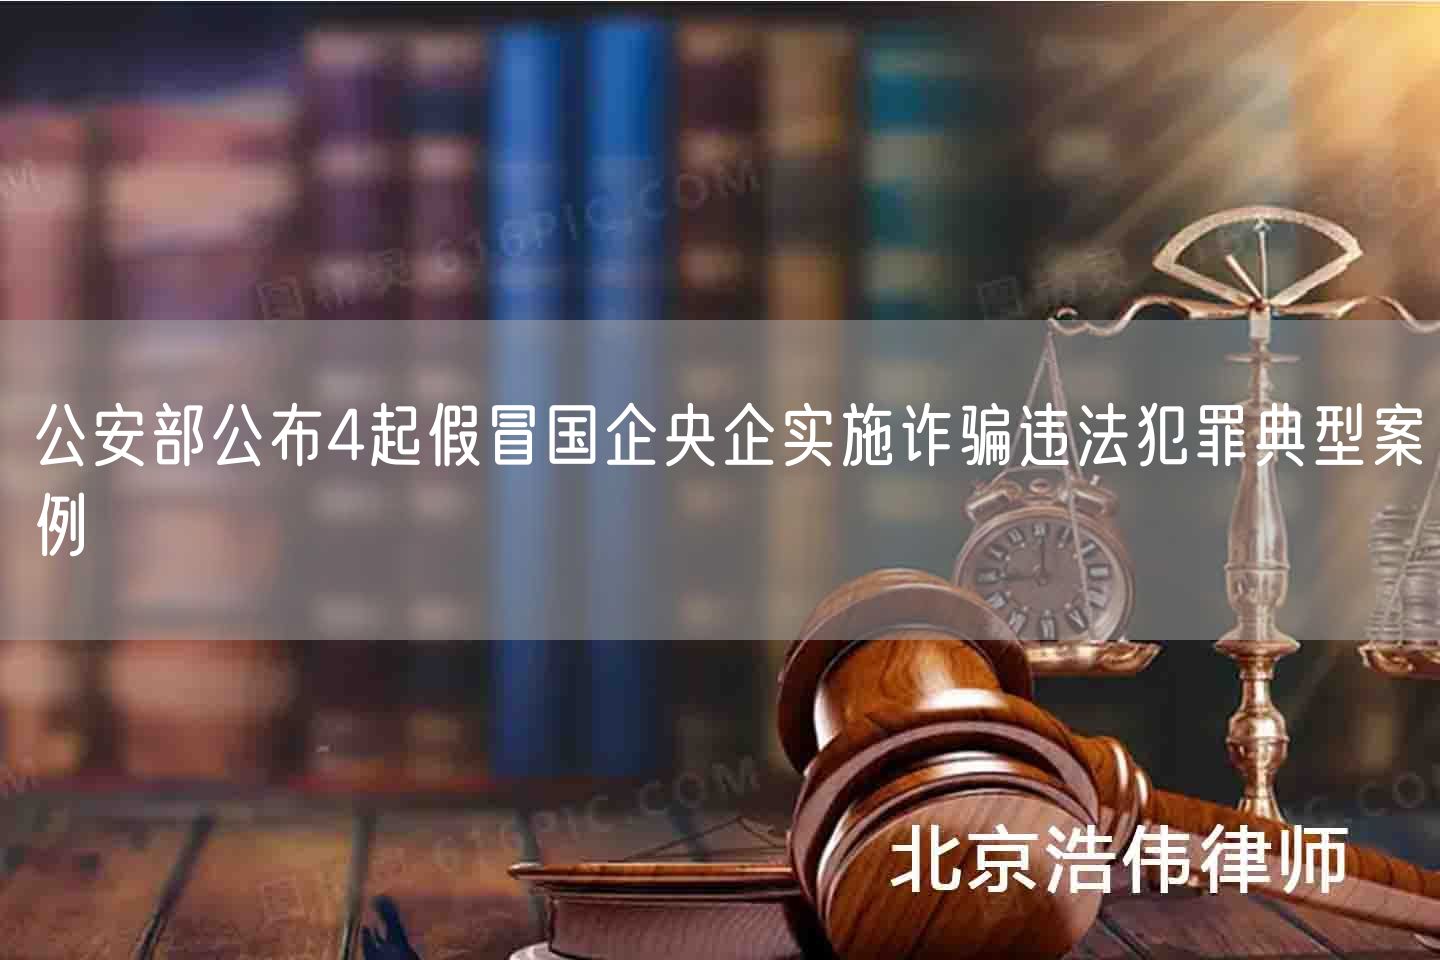 公安部公布4起假冒国企央企实施诈骗违法犯罪典型案例